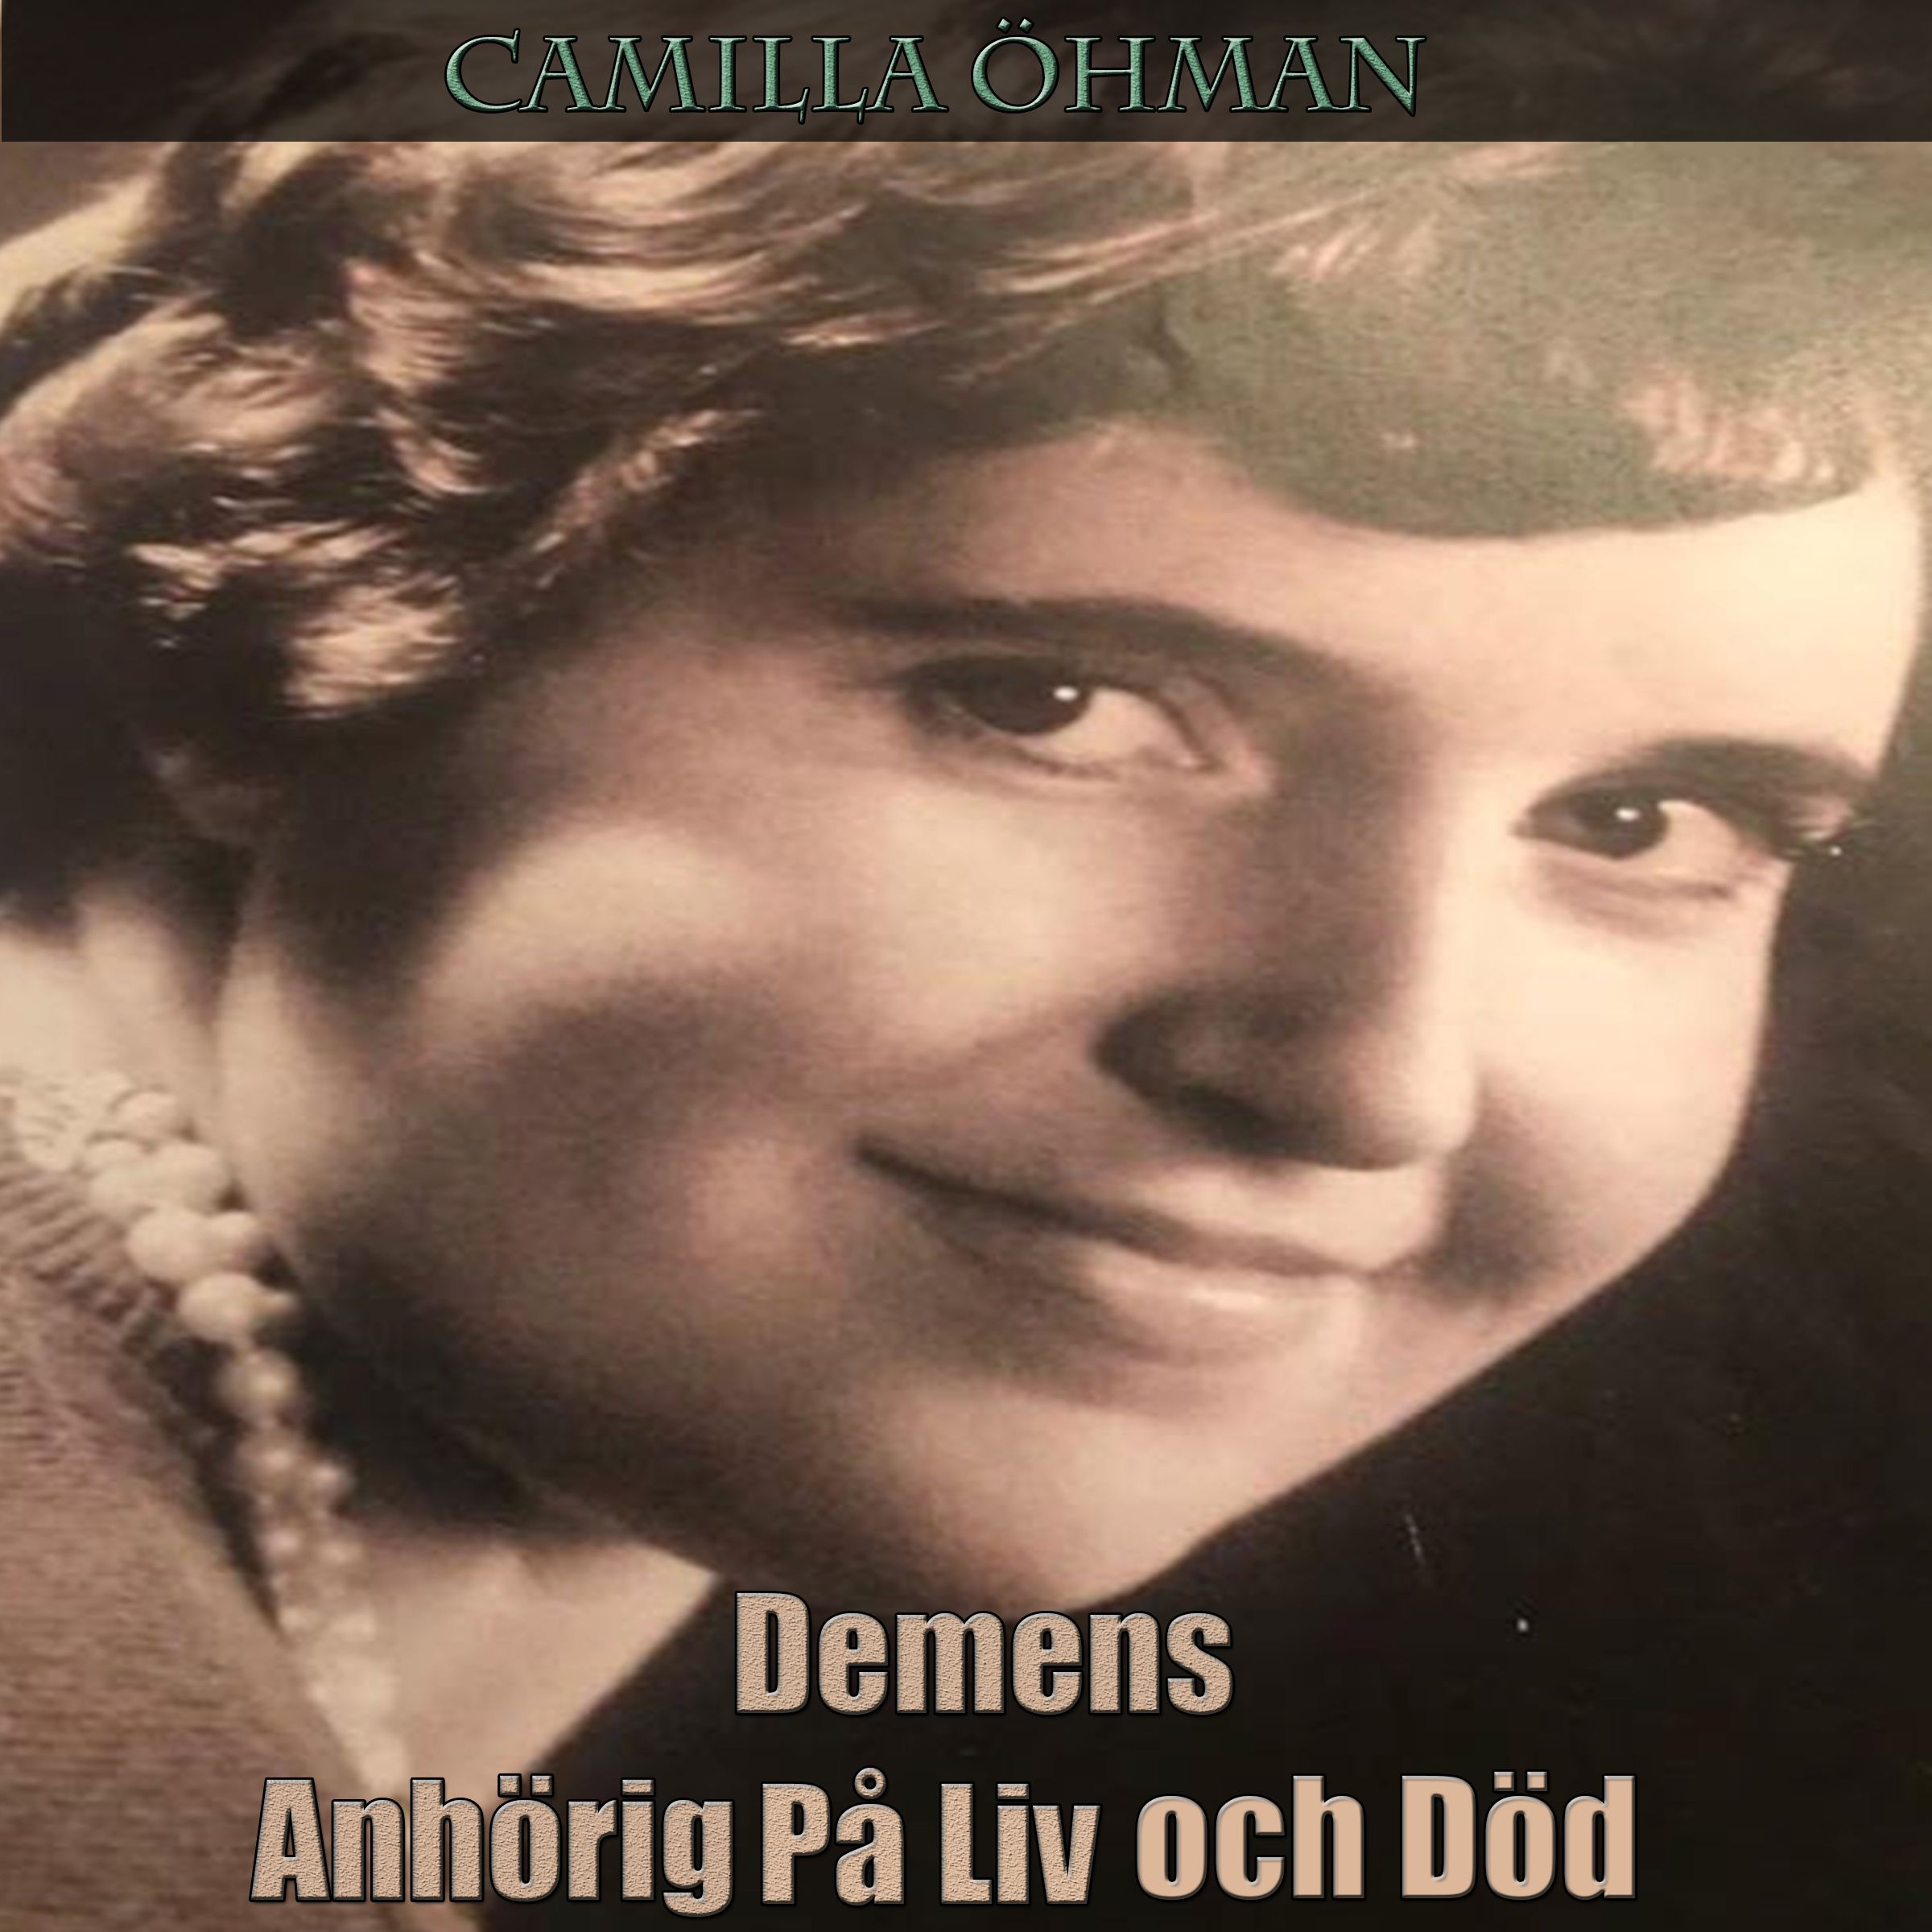 Demens - Anhörig På Liv och Död, audiobook by Camilla Öhman